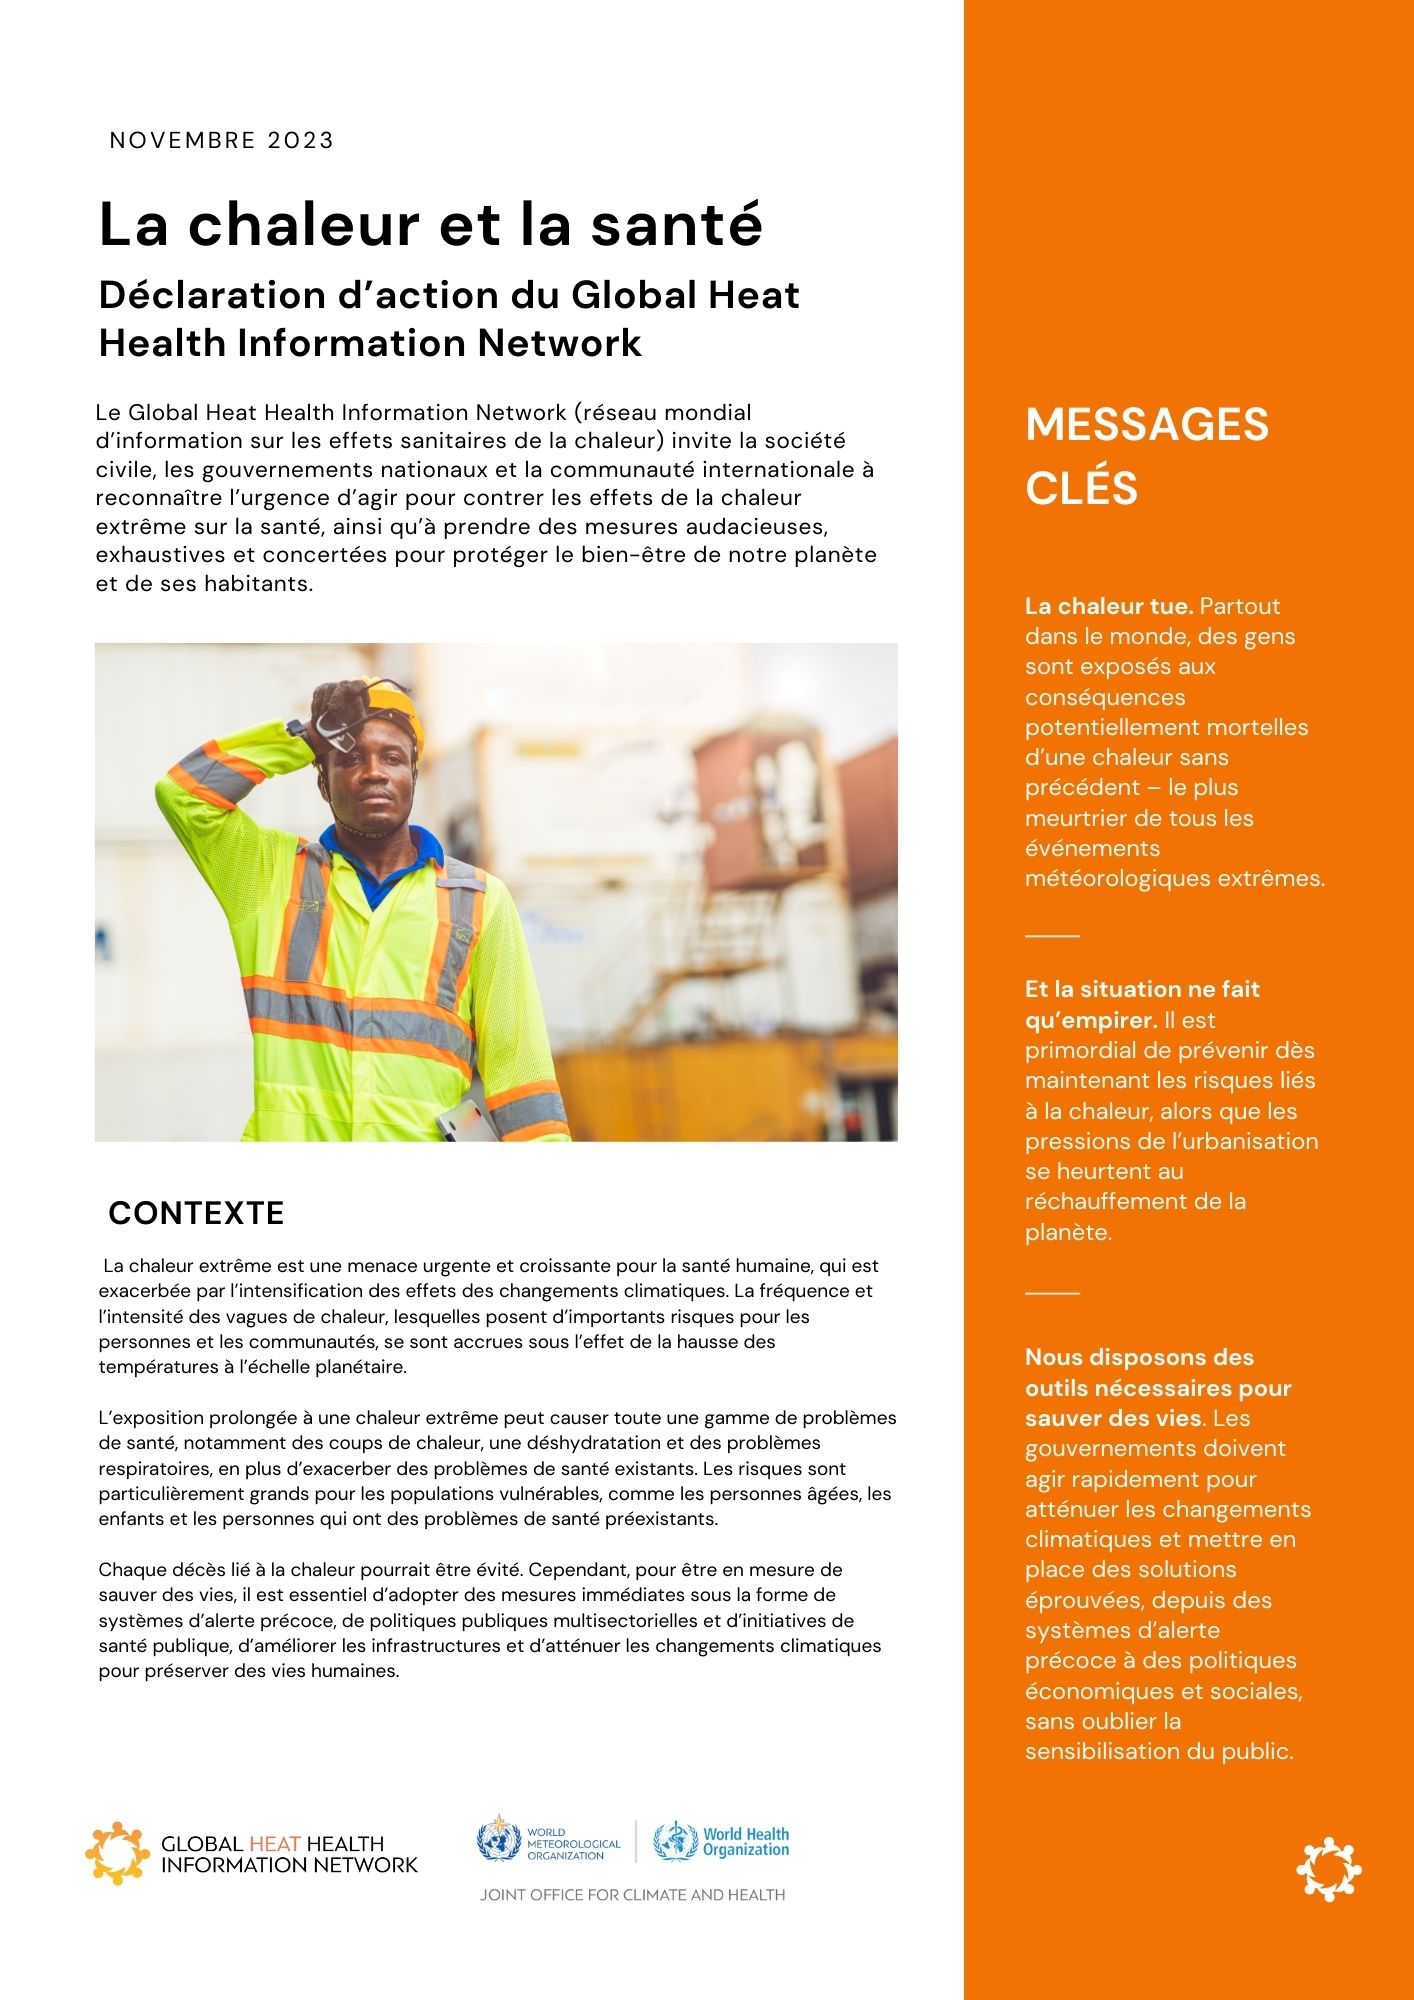 https://ghhin.org/resources/declaration-daction-du-global-heat-health-information-network/